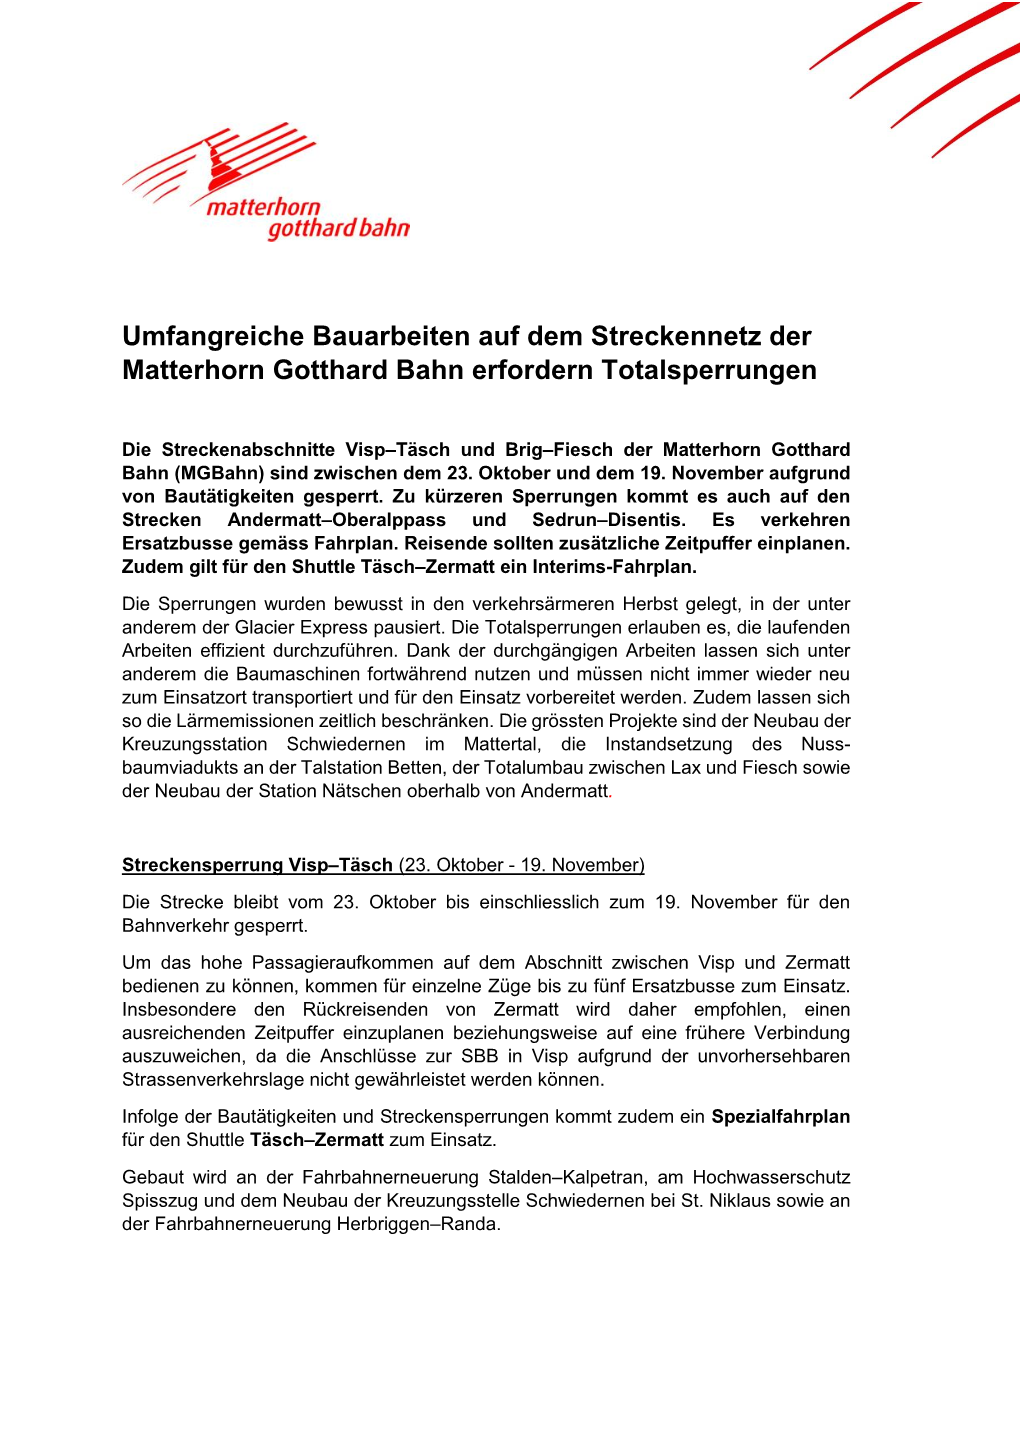 Umfangreiche Bauarbeiten Auf Dem Streckennetz Der Matterhorn Gotthard Bahn Erfordern Totalsperrungen